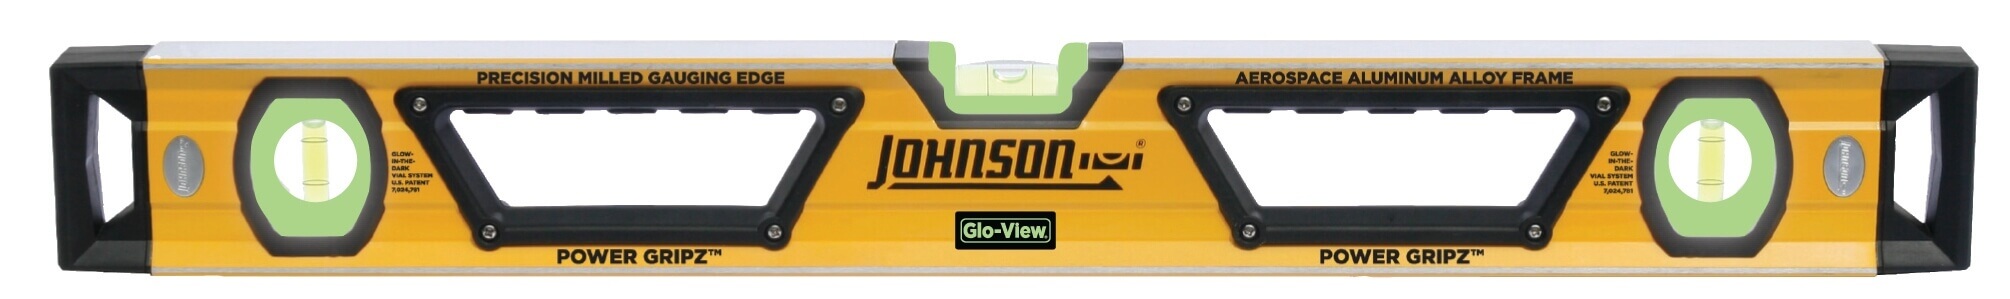 Johnson Level 72 Glo-View Heavy Duty Aluminum Box Level 1717-7200